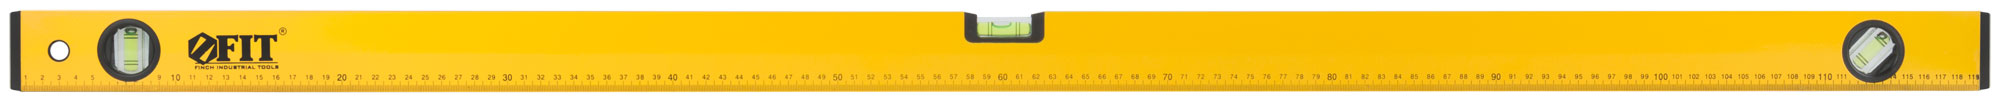 FIT IT  Уровень Старт, 3 глазка, желтый корпус, фрезер. рабочая грань, магниты, шкала 1200